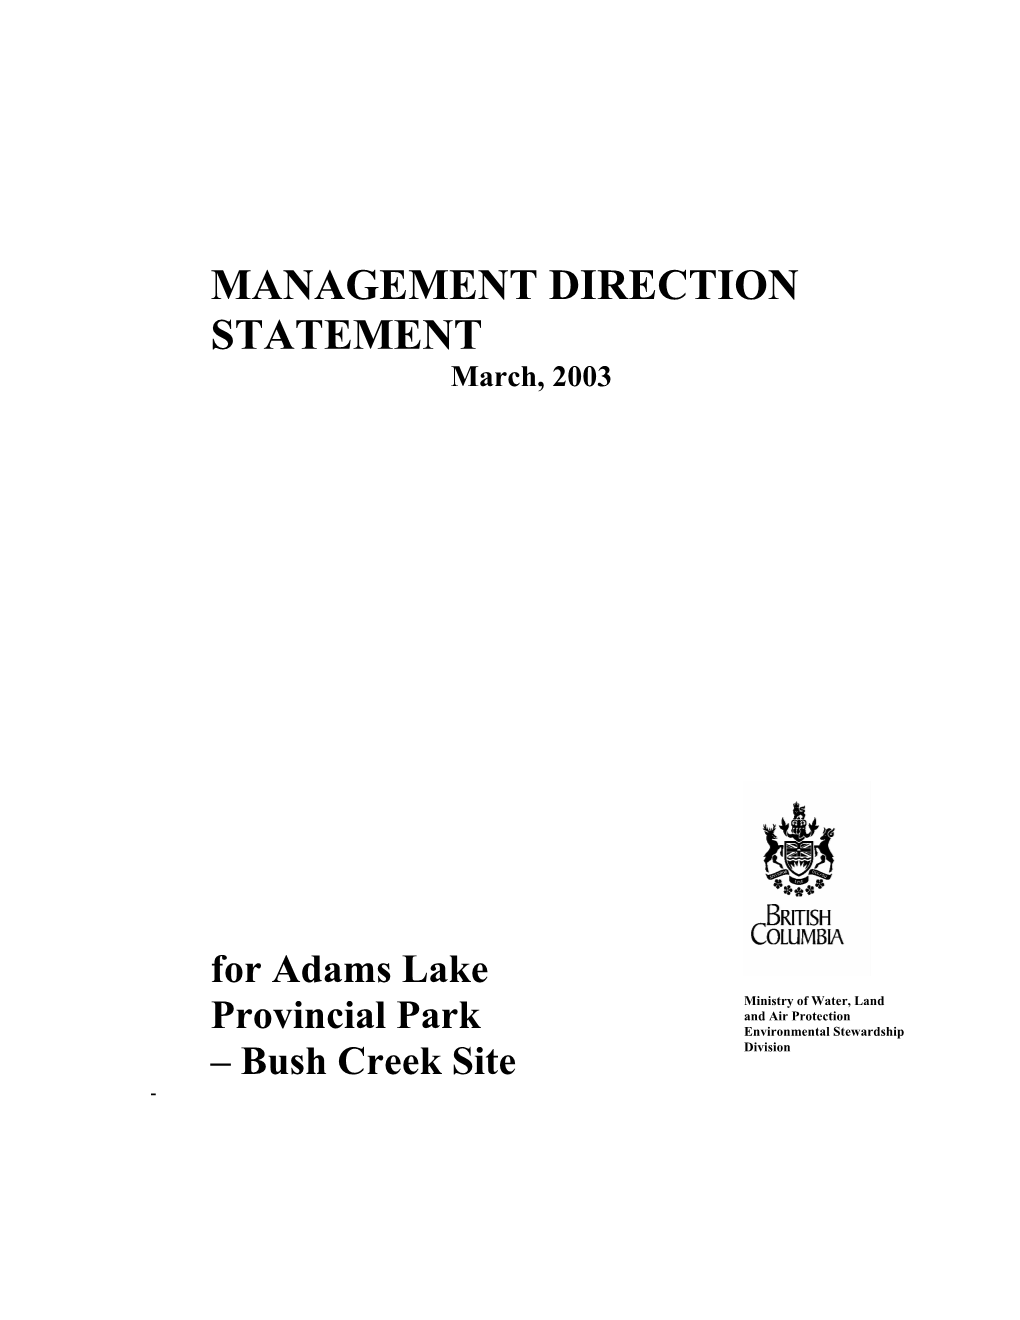 Adams Lake Provincial Park Bush Creek Site Management